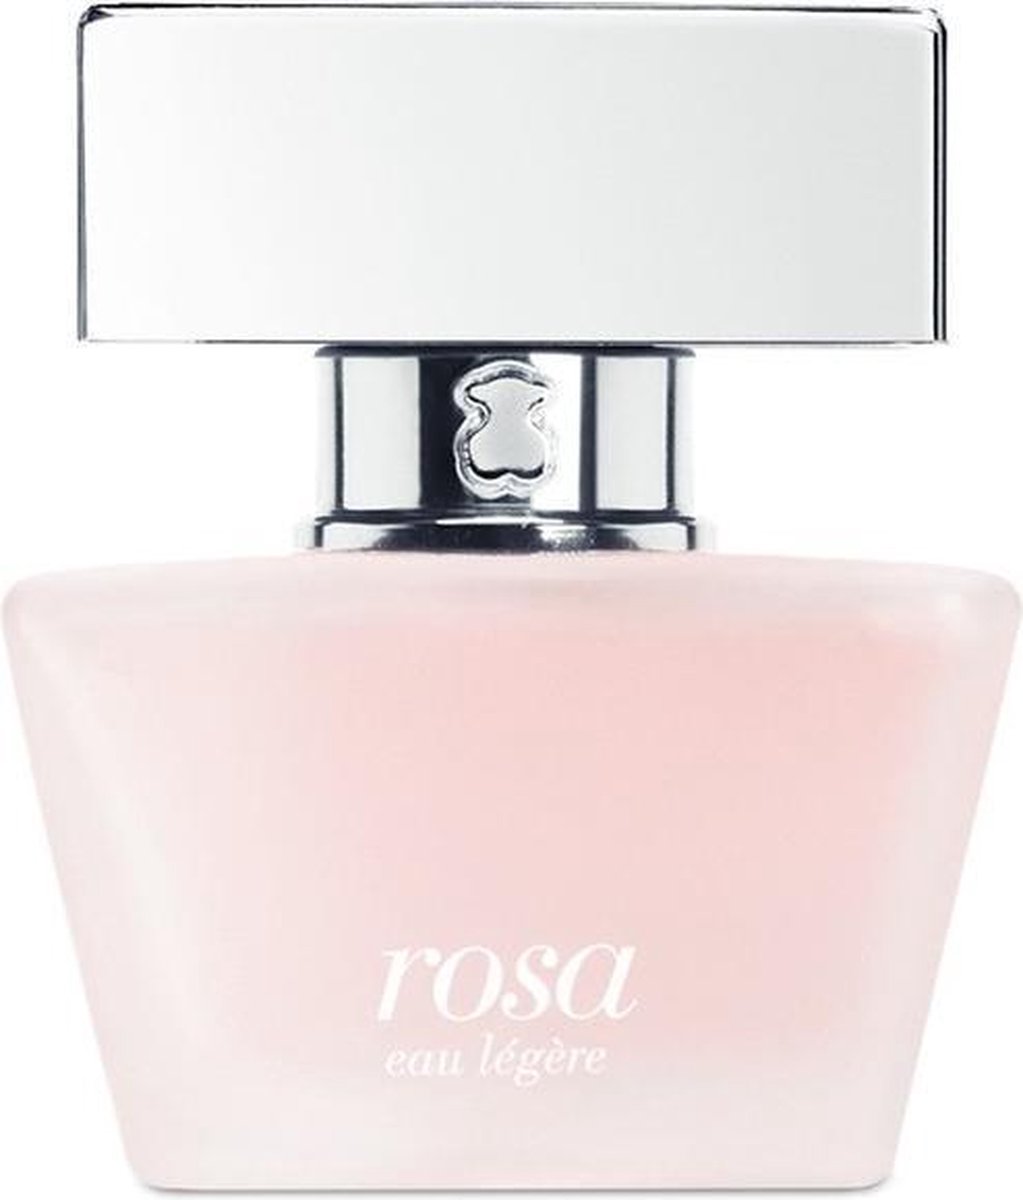 Women's Perfume Rosa Eau Légère Tous EDT